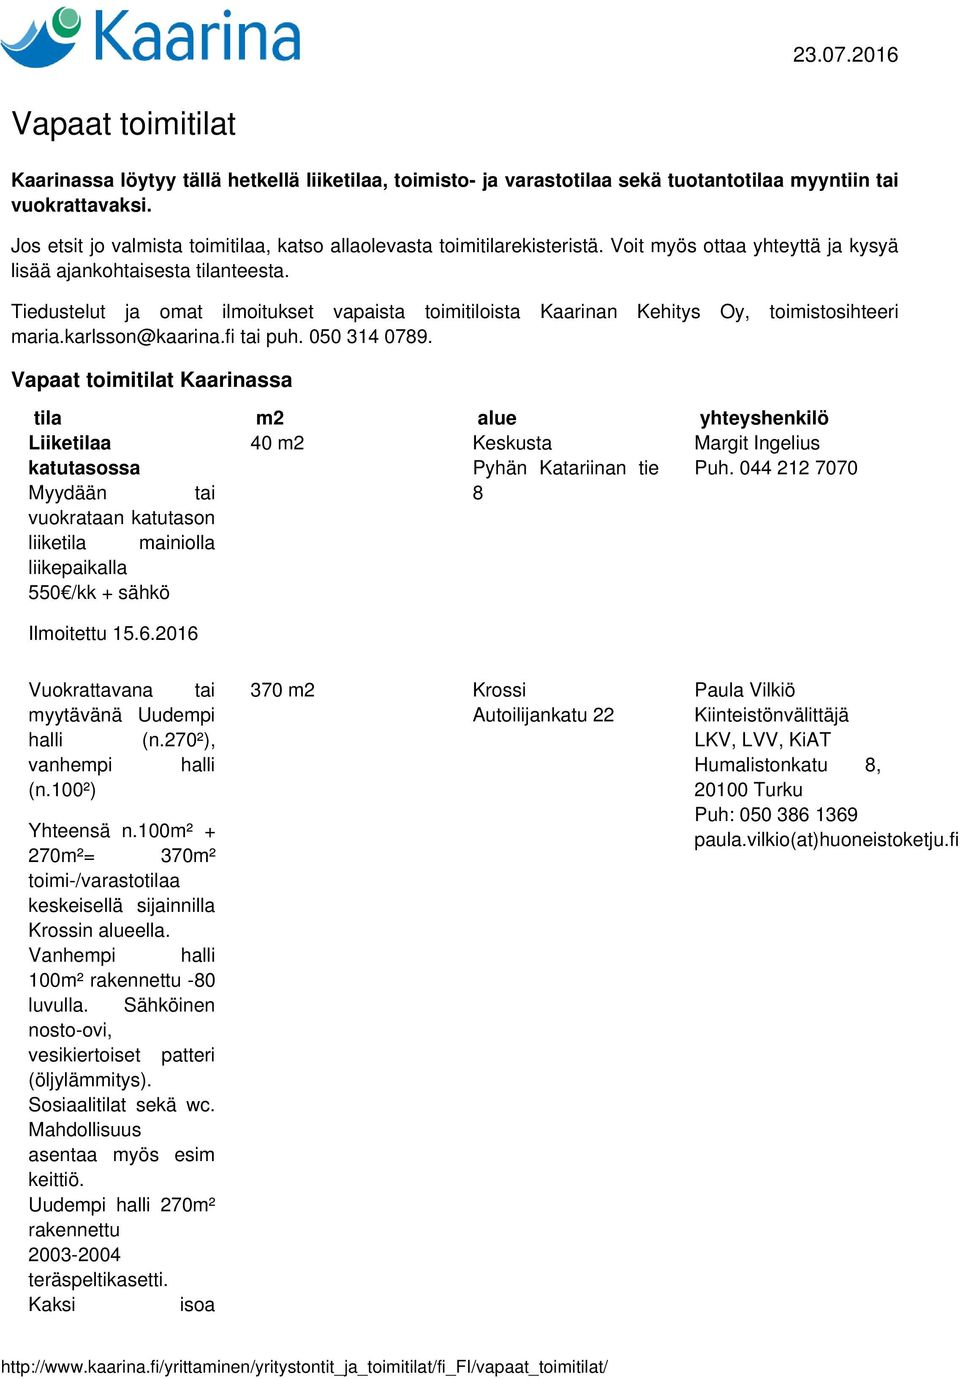 Tiedustelut ja omat ilmoitukset vapaista toimitiloista Kaarinan Kehitys Oy, toimistosihteeri maria.karlsson@kaarina.fi tai puh. 050 314 0789.